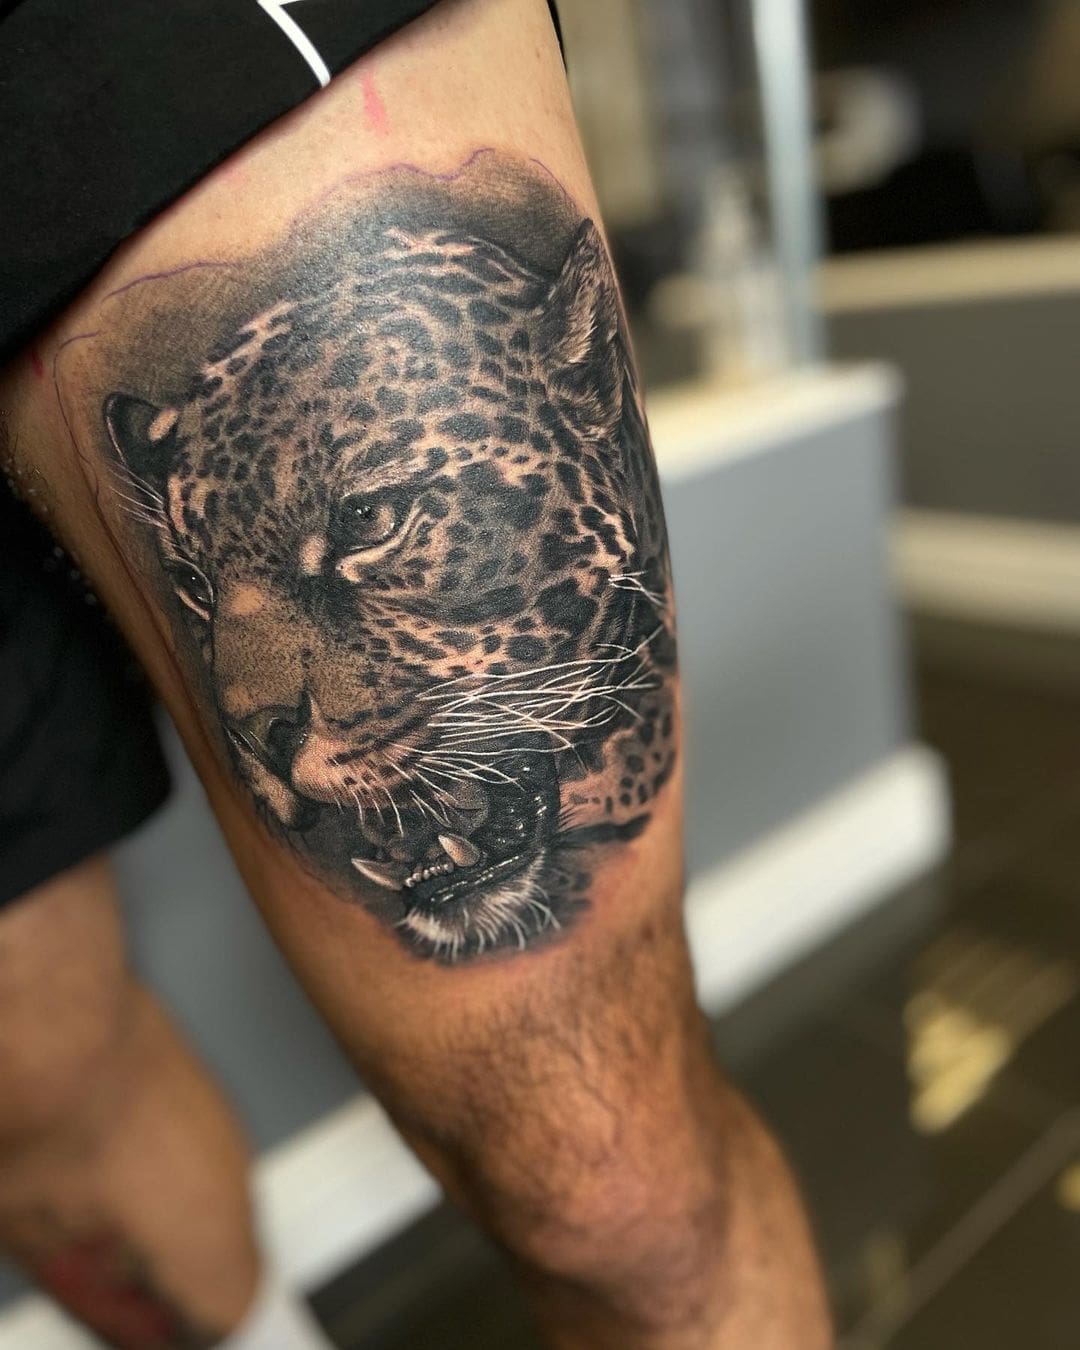 Tiger Tattoos - Tattoo Insider | Tiger tattoo, Tattoos, Thigh tattoos women